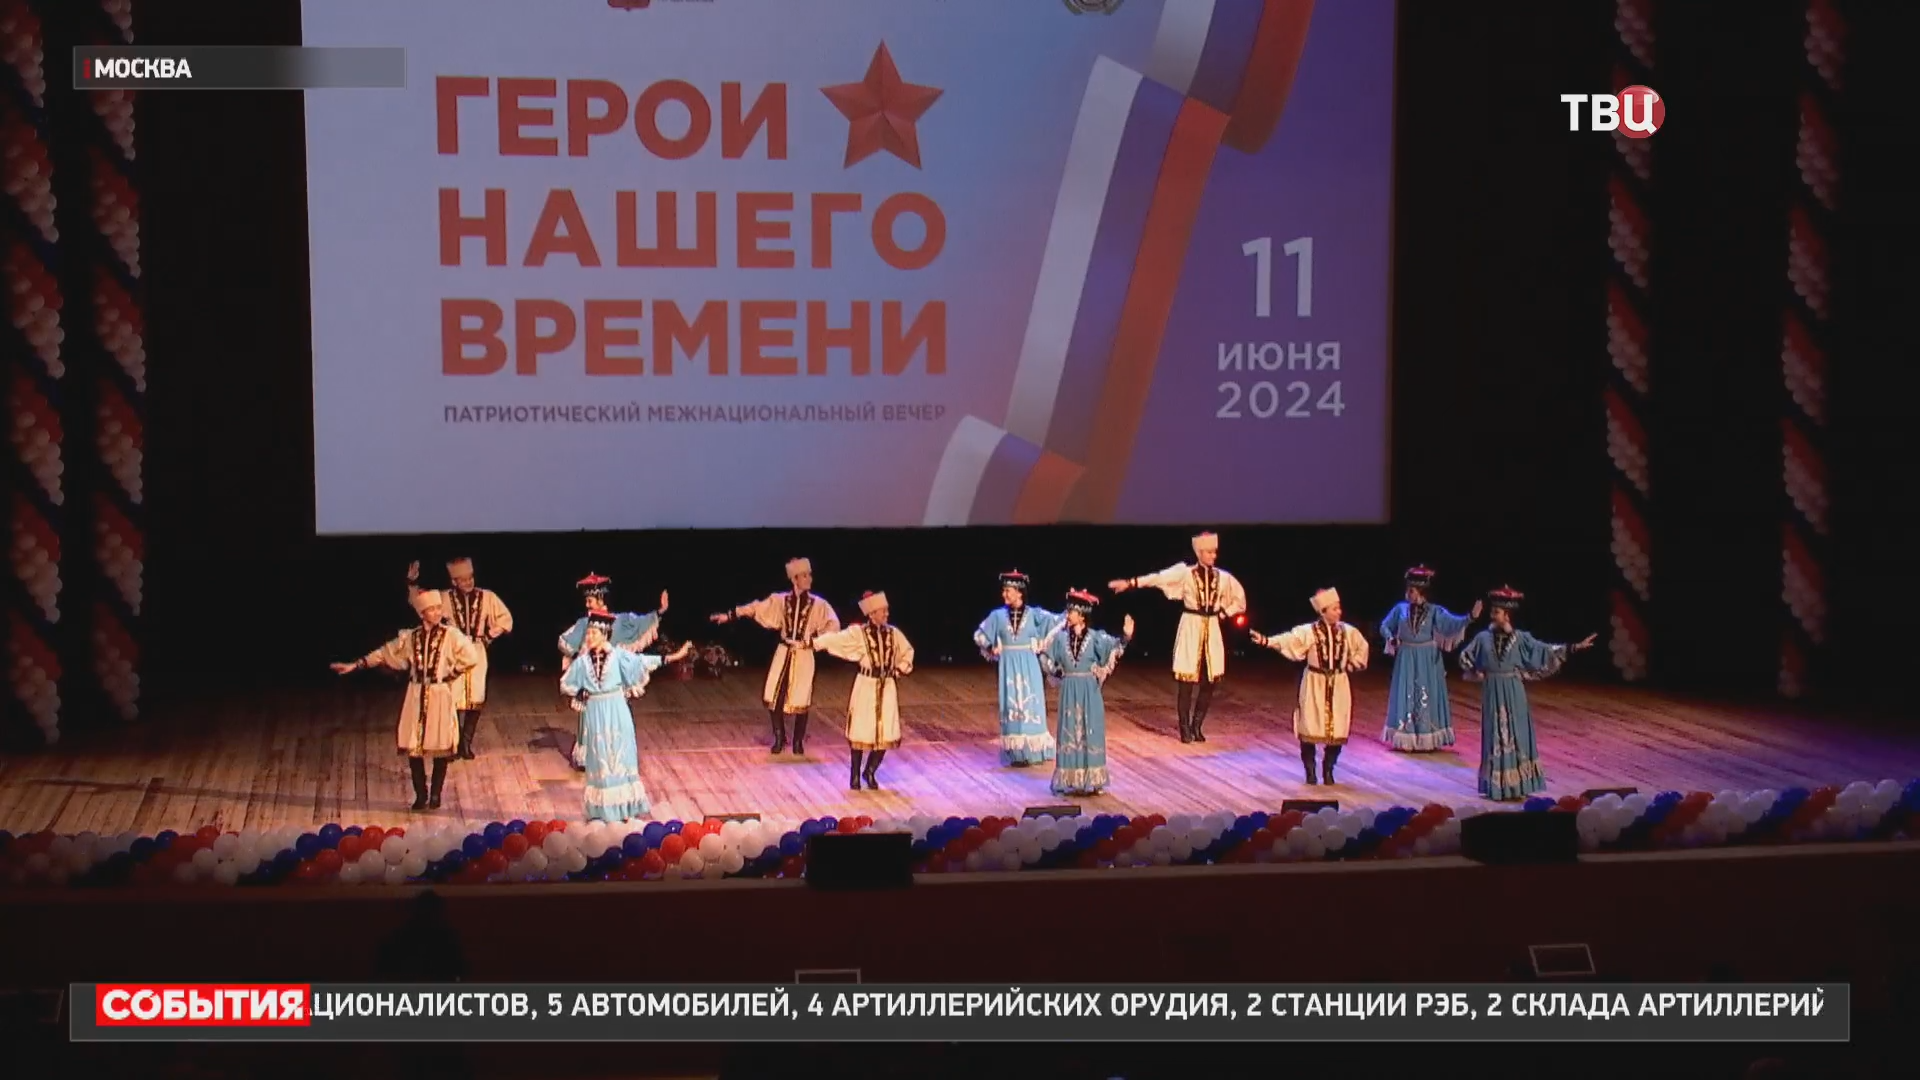 Патриотический вечер в Москве посвятили участникам СВО / События на ТВЦ